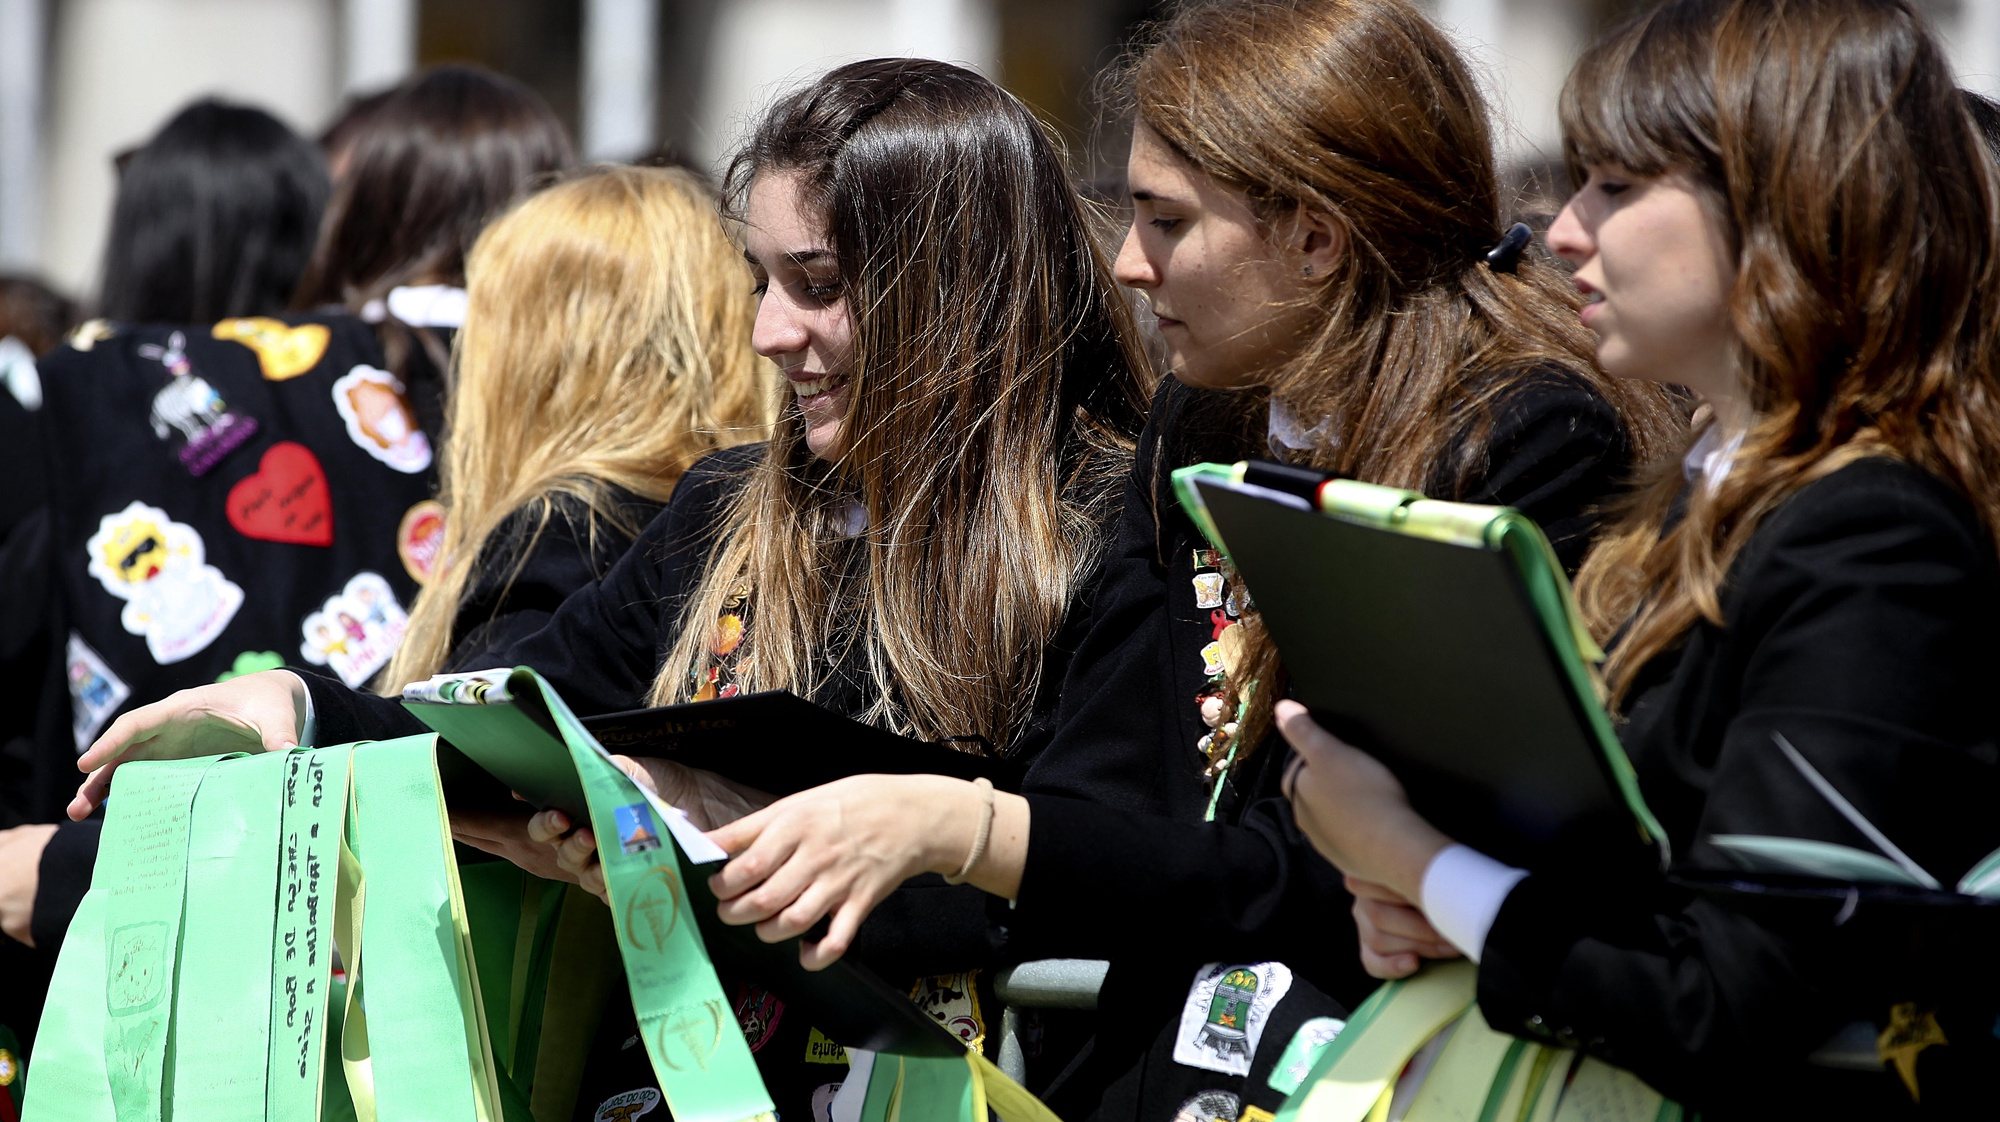 Estudantes universitárias mostram as suas fitas na tradicional cerimónia da Benção das Fitas presidida pelo cardeal-patriarca de Lisboa, José Policarpo, 18 de maio de 2013 no Terreiro do Paço em Lisboa. TIAGO PETINGA/LUSA